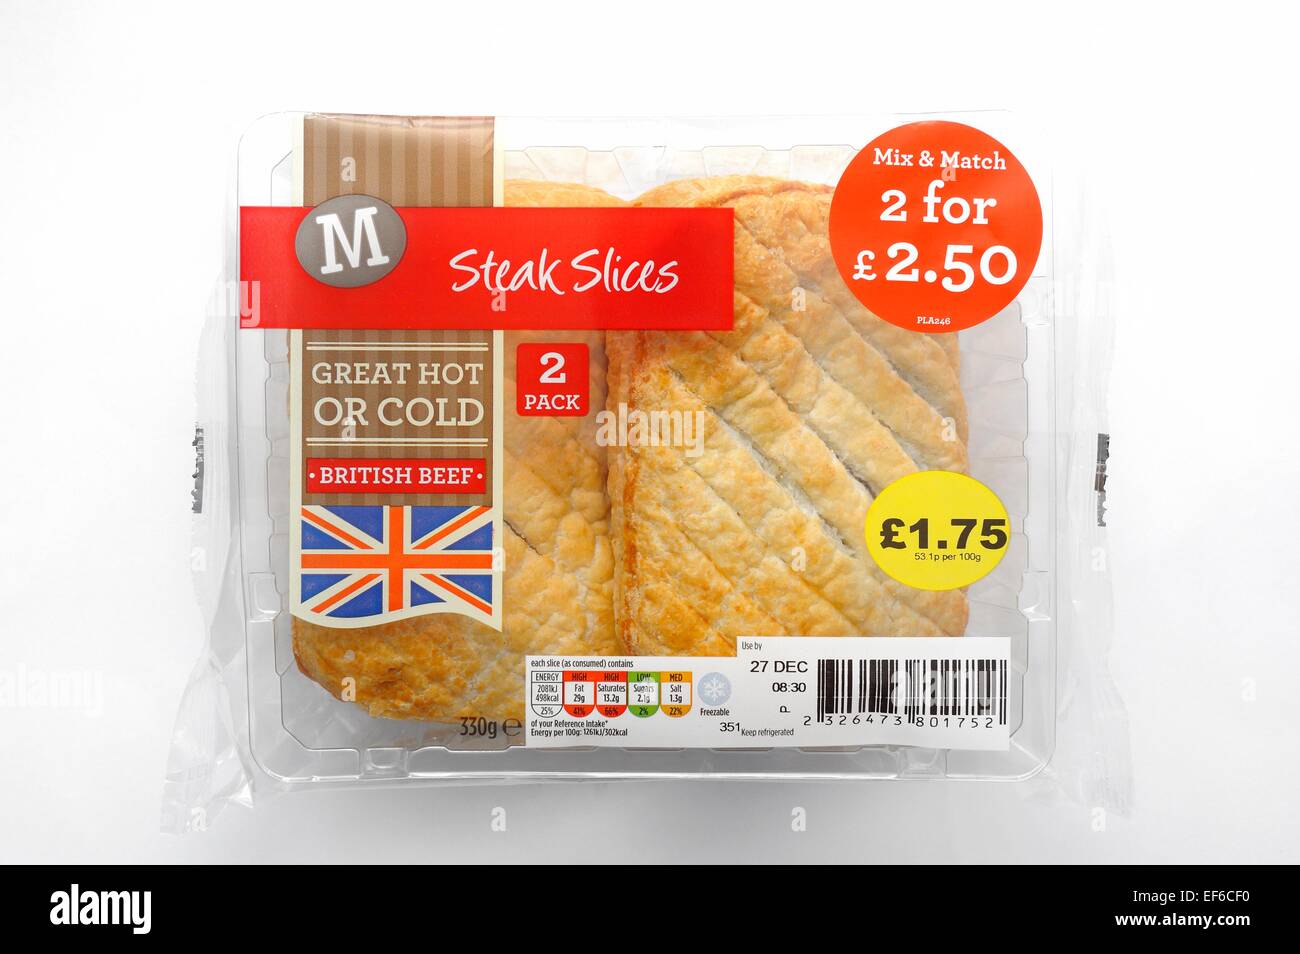 Morrisons supermercato mix and match 2 per £2.50 offerta promozionale british bistecca fette Foto Stock